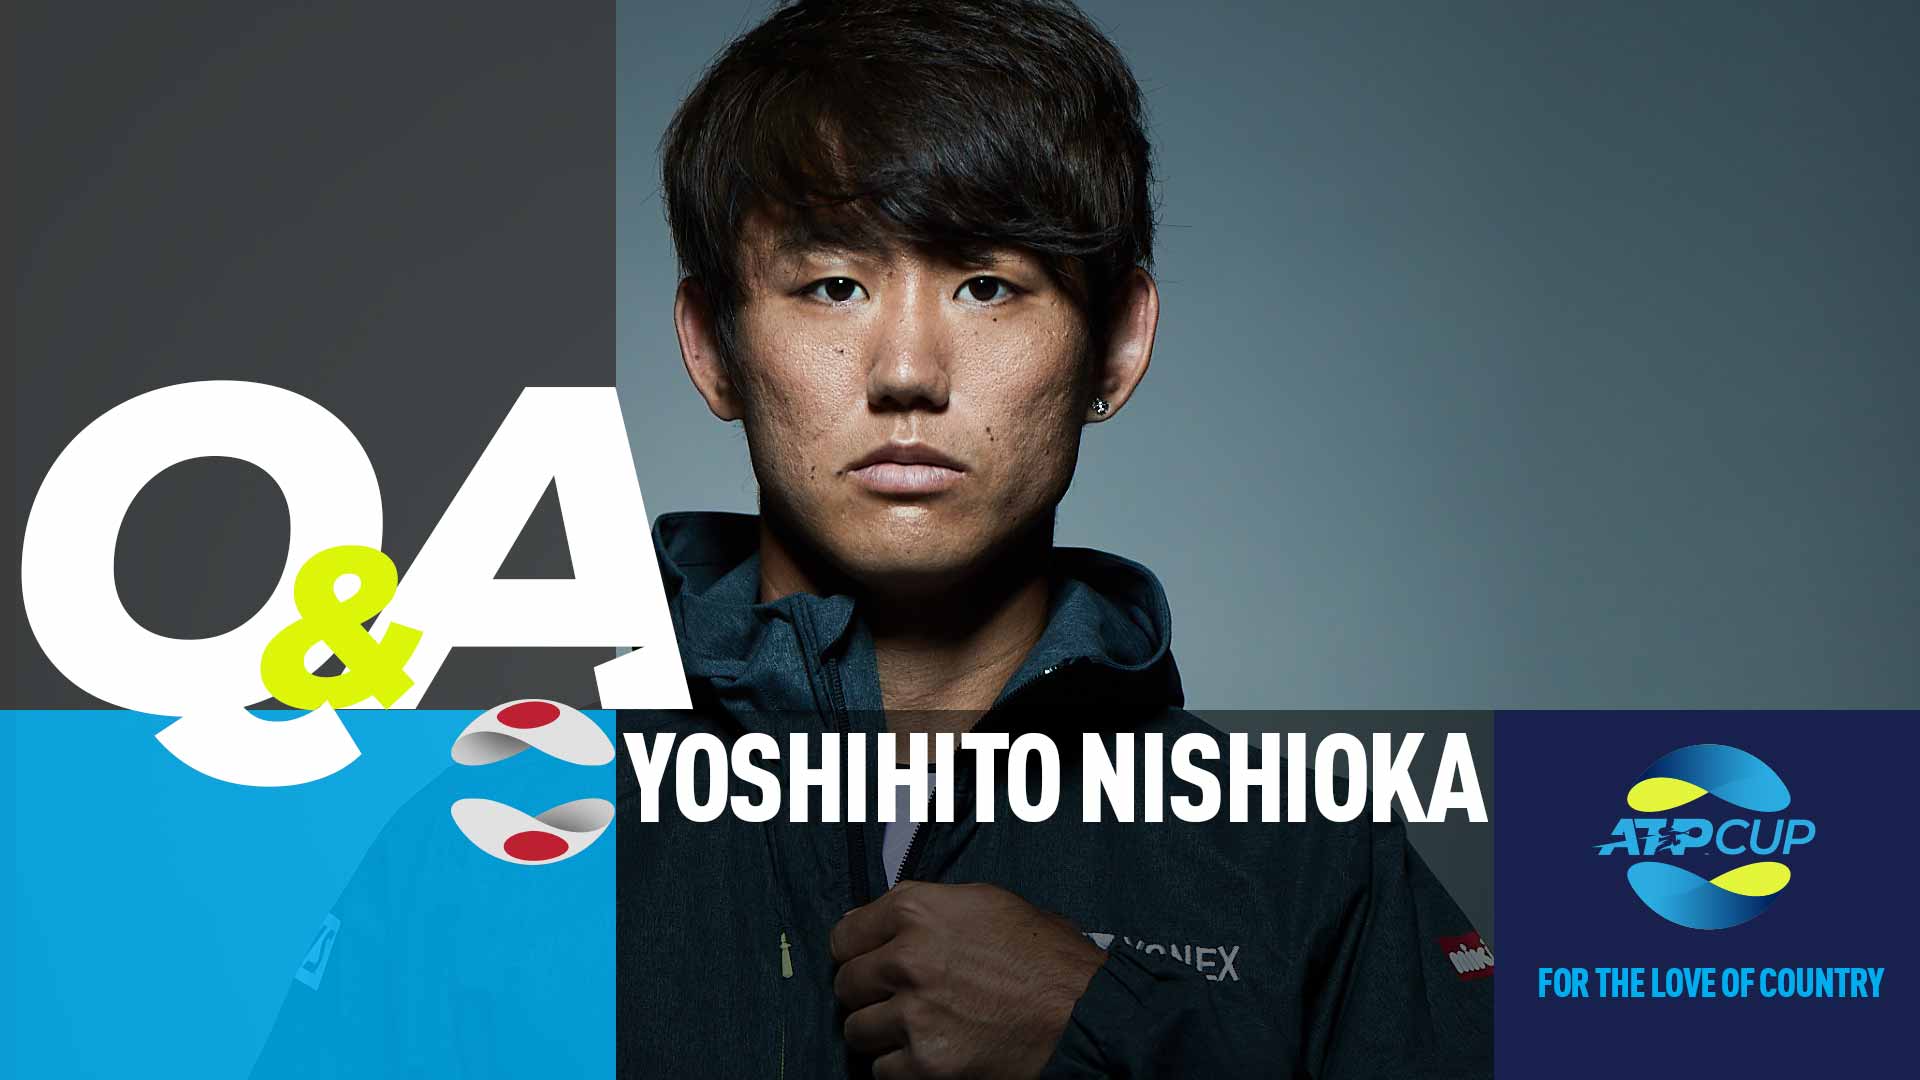 Yoshihito Nishioka will be Japan's No. 2 singles player at the inaugural ATP Cup.